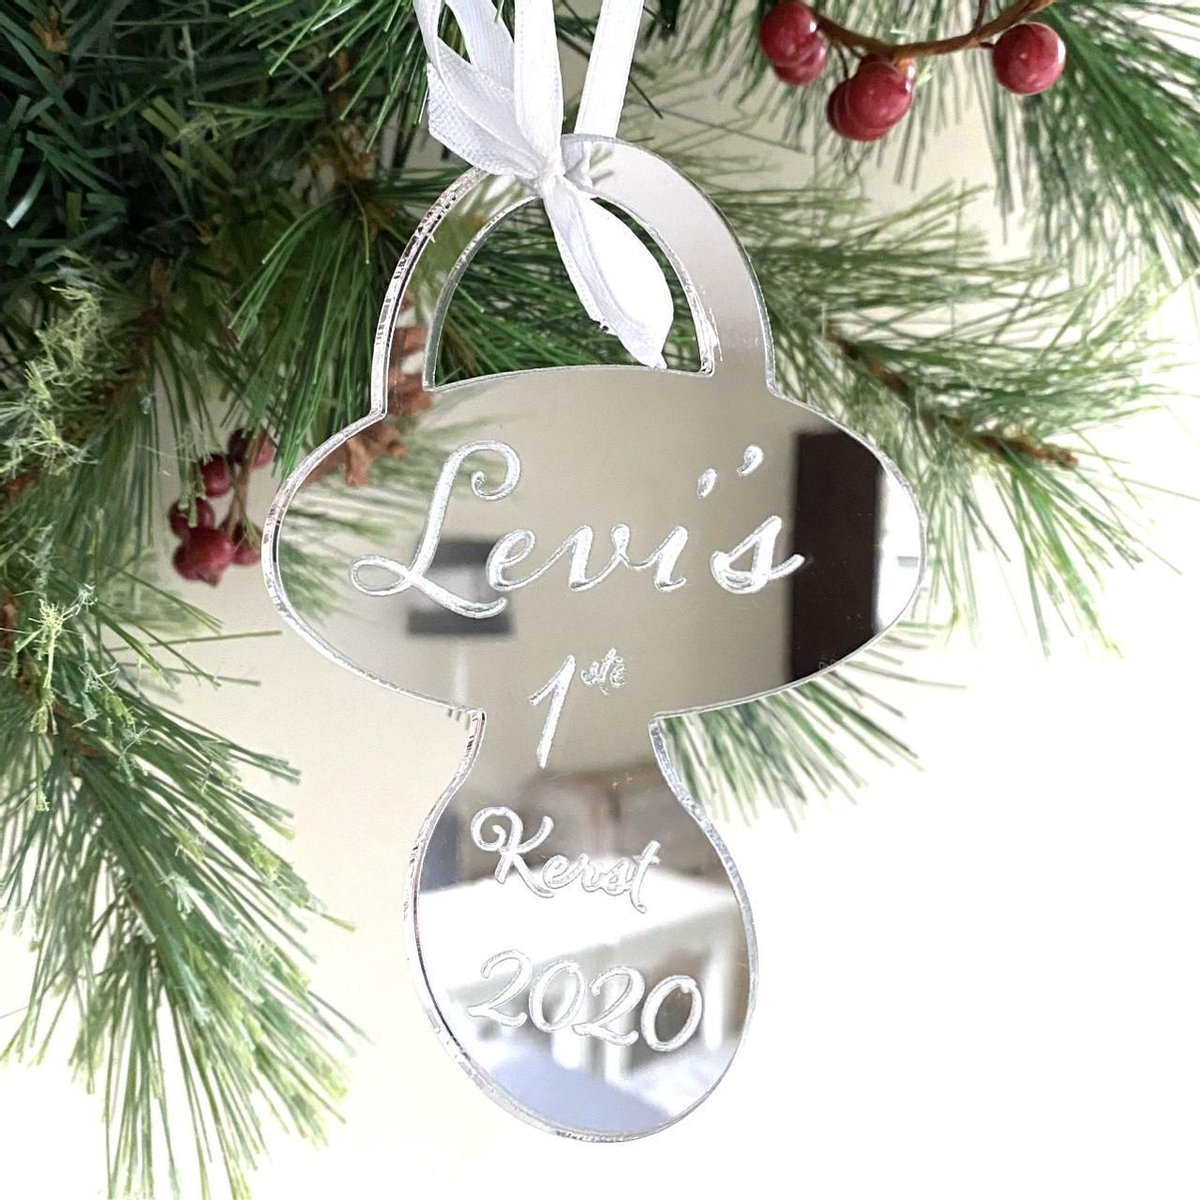 Kerstboom| Kerst| Kerstbal| kersthanger| kerstcadeau| kerstgeschenk| kraamcadeau| speen| gepersonaliseerd| HxB 12x9 cm breed| acryl| plexiglas| zilver spiegel